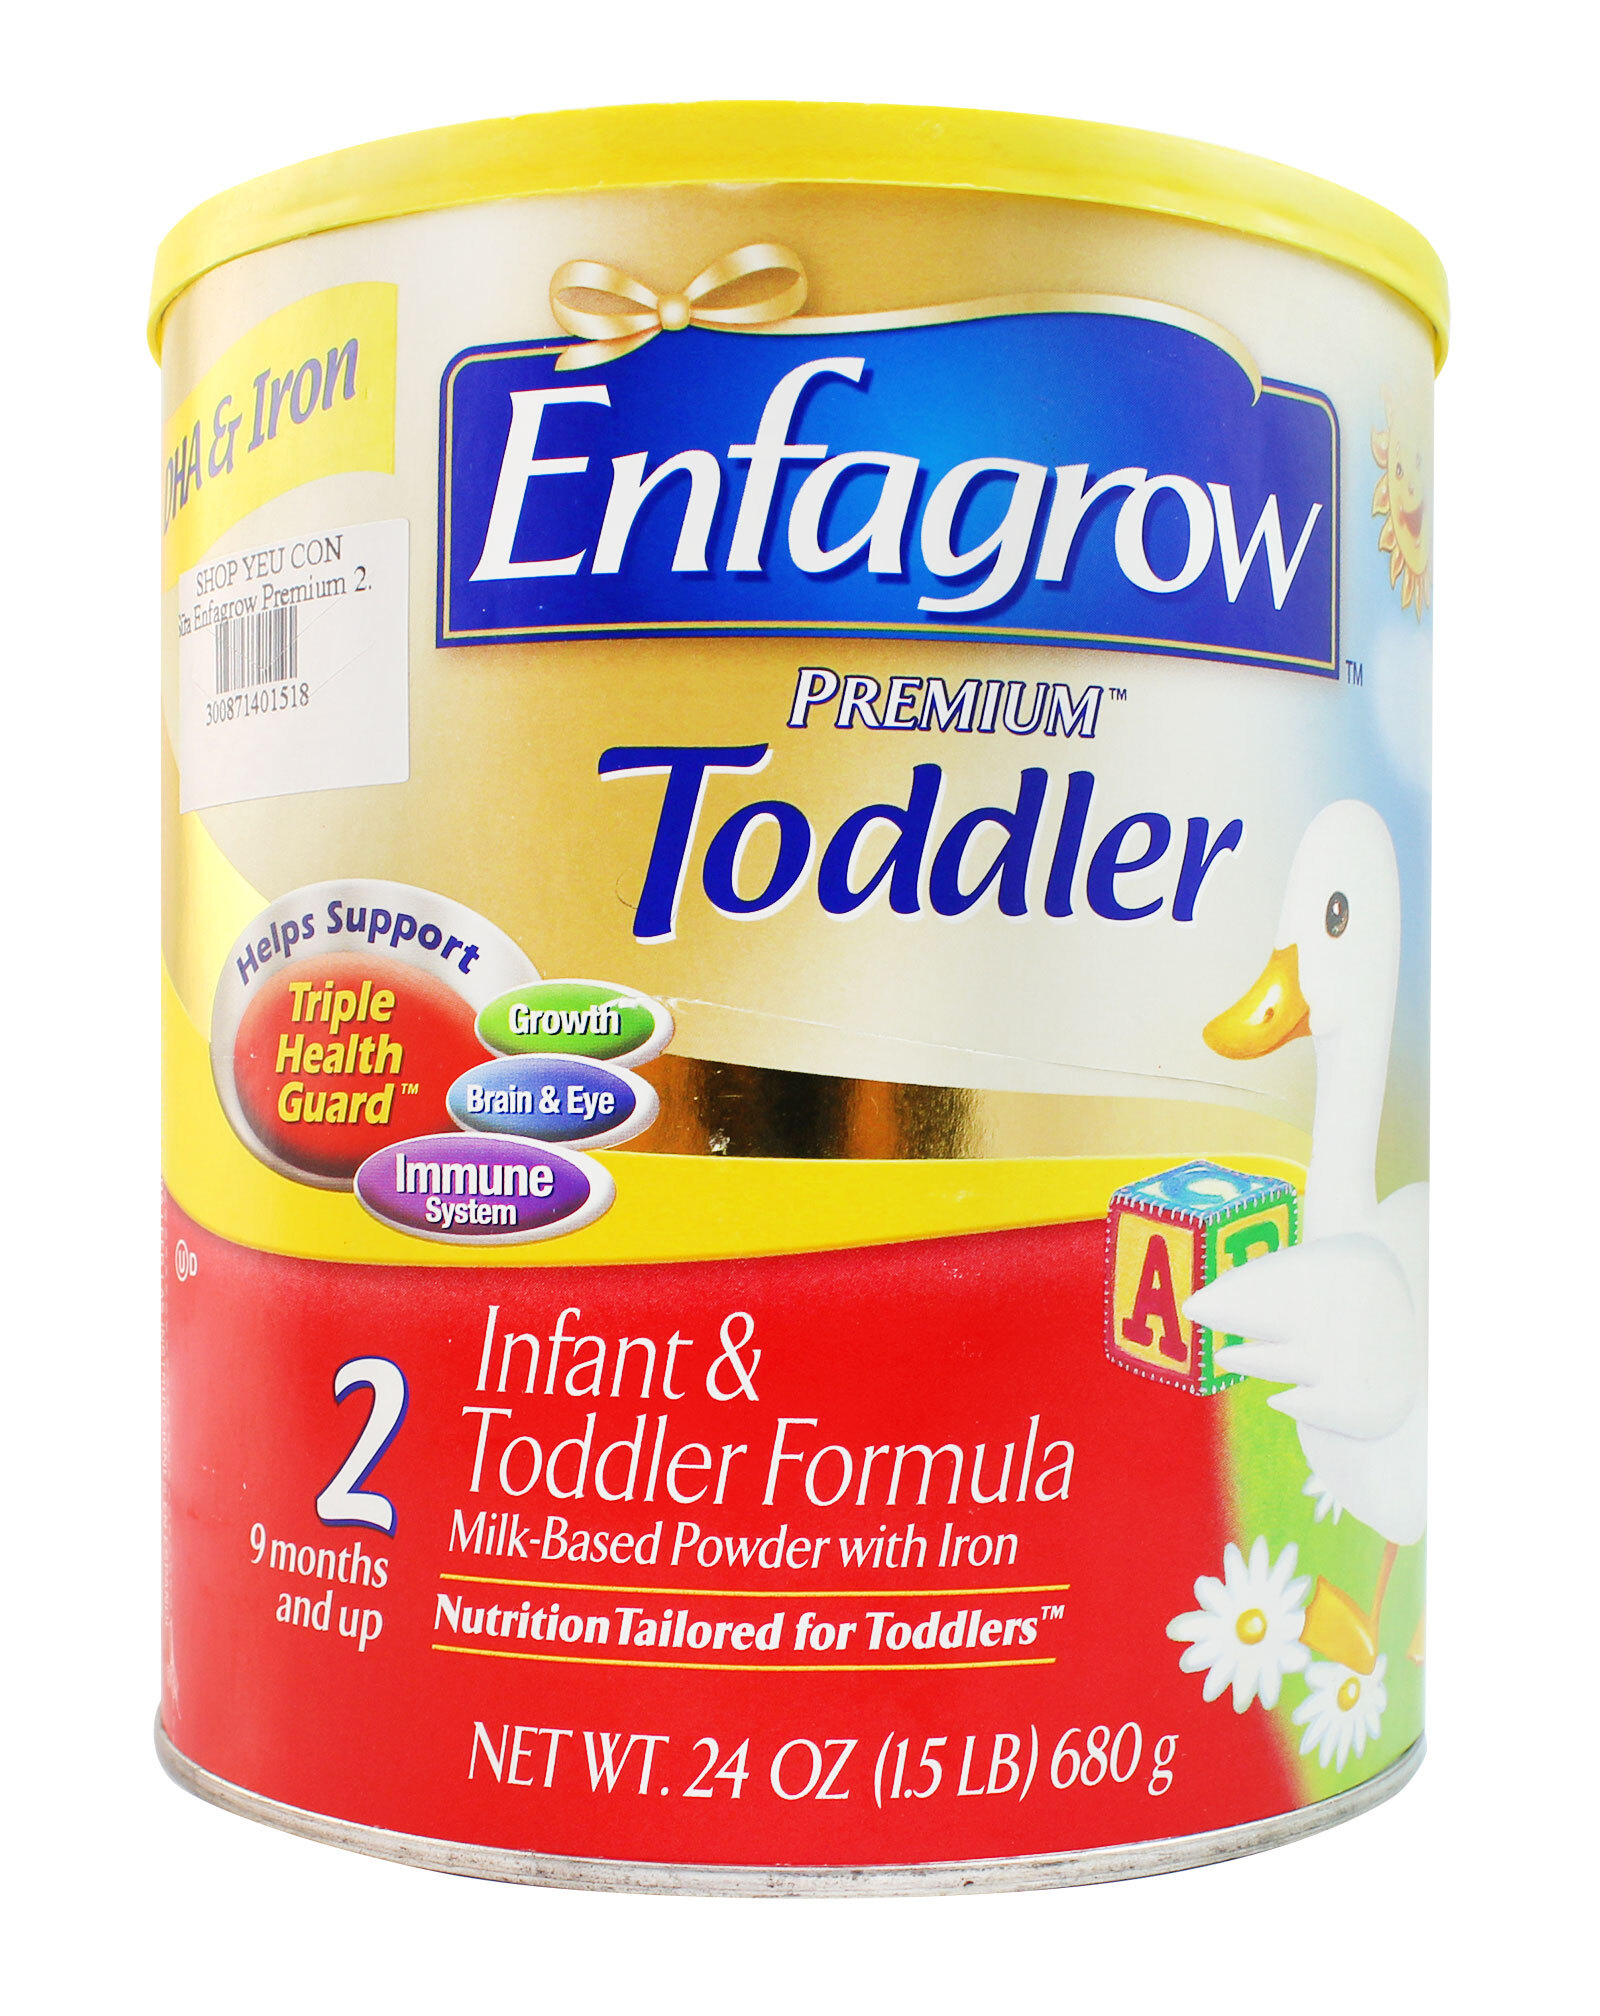 Sữa Enfagrow Premium Todder giúp tăng cường miễn dịch cho bé từ 9 tháng tuổi đến 12 tháng tuổi.